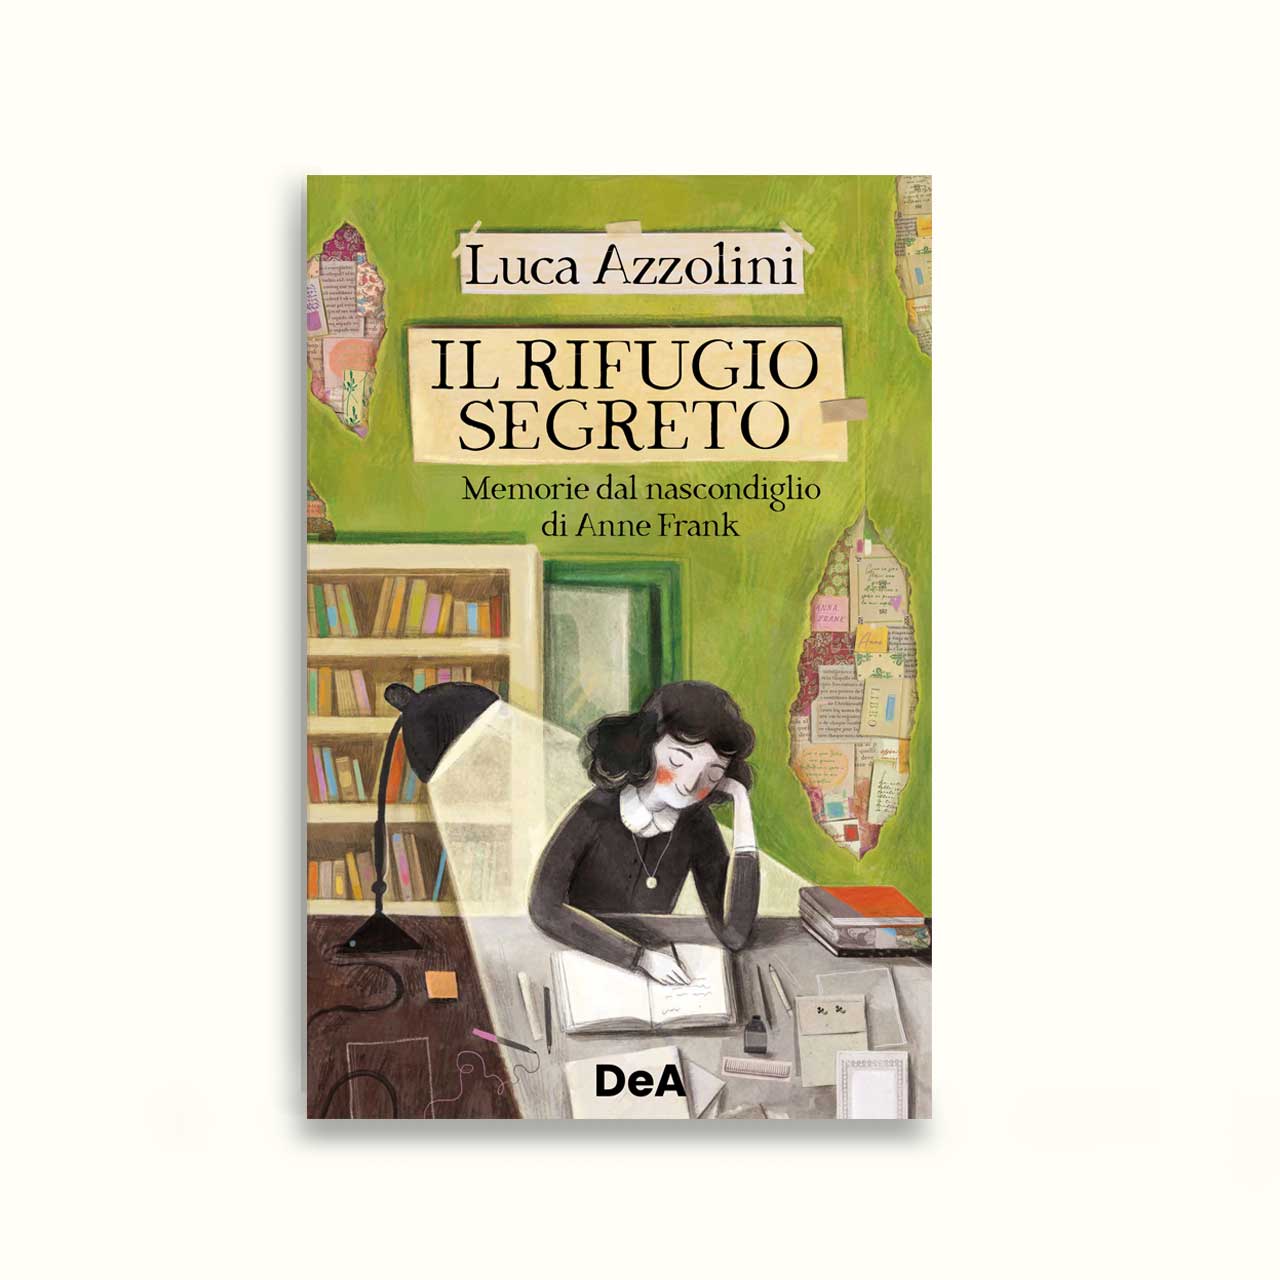 illustrazione realizzata da Ilaria Zanellato per il nuovo romanzo di Luca Azzolini "Il rifugio segreto",memorie di Anna Frank